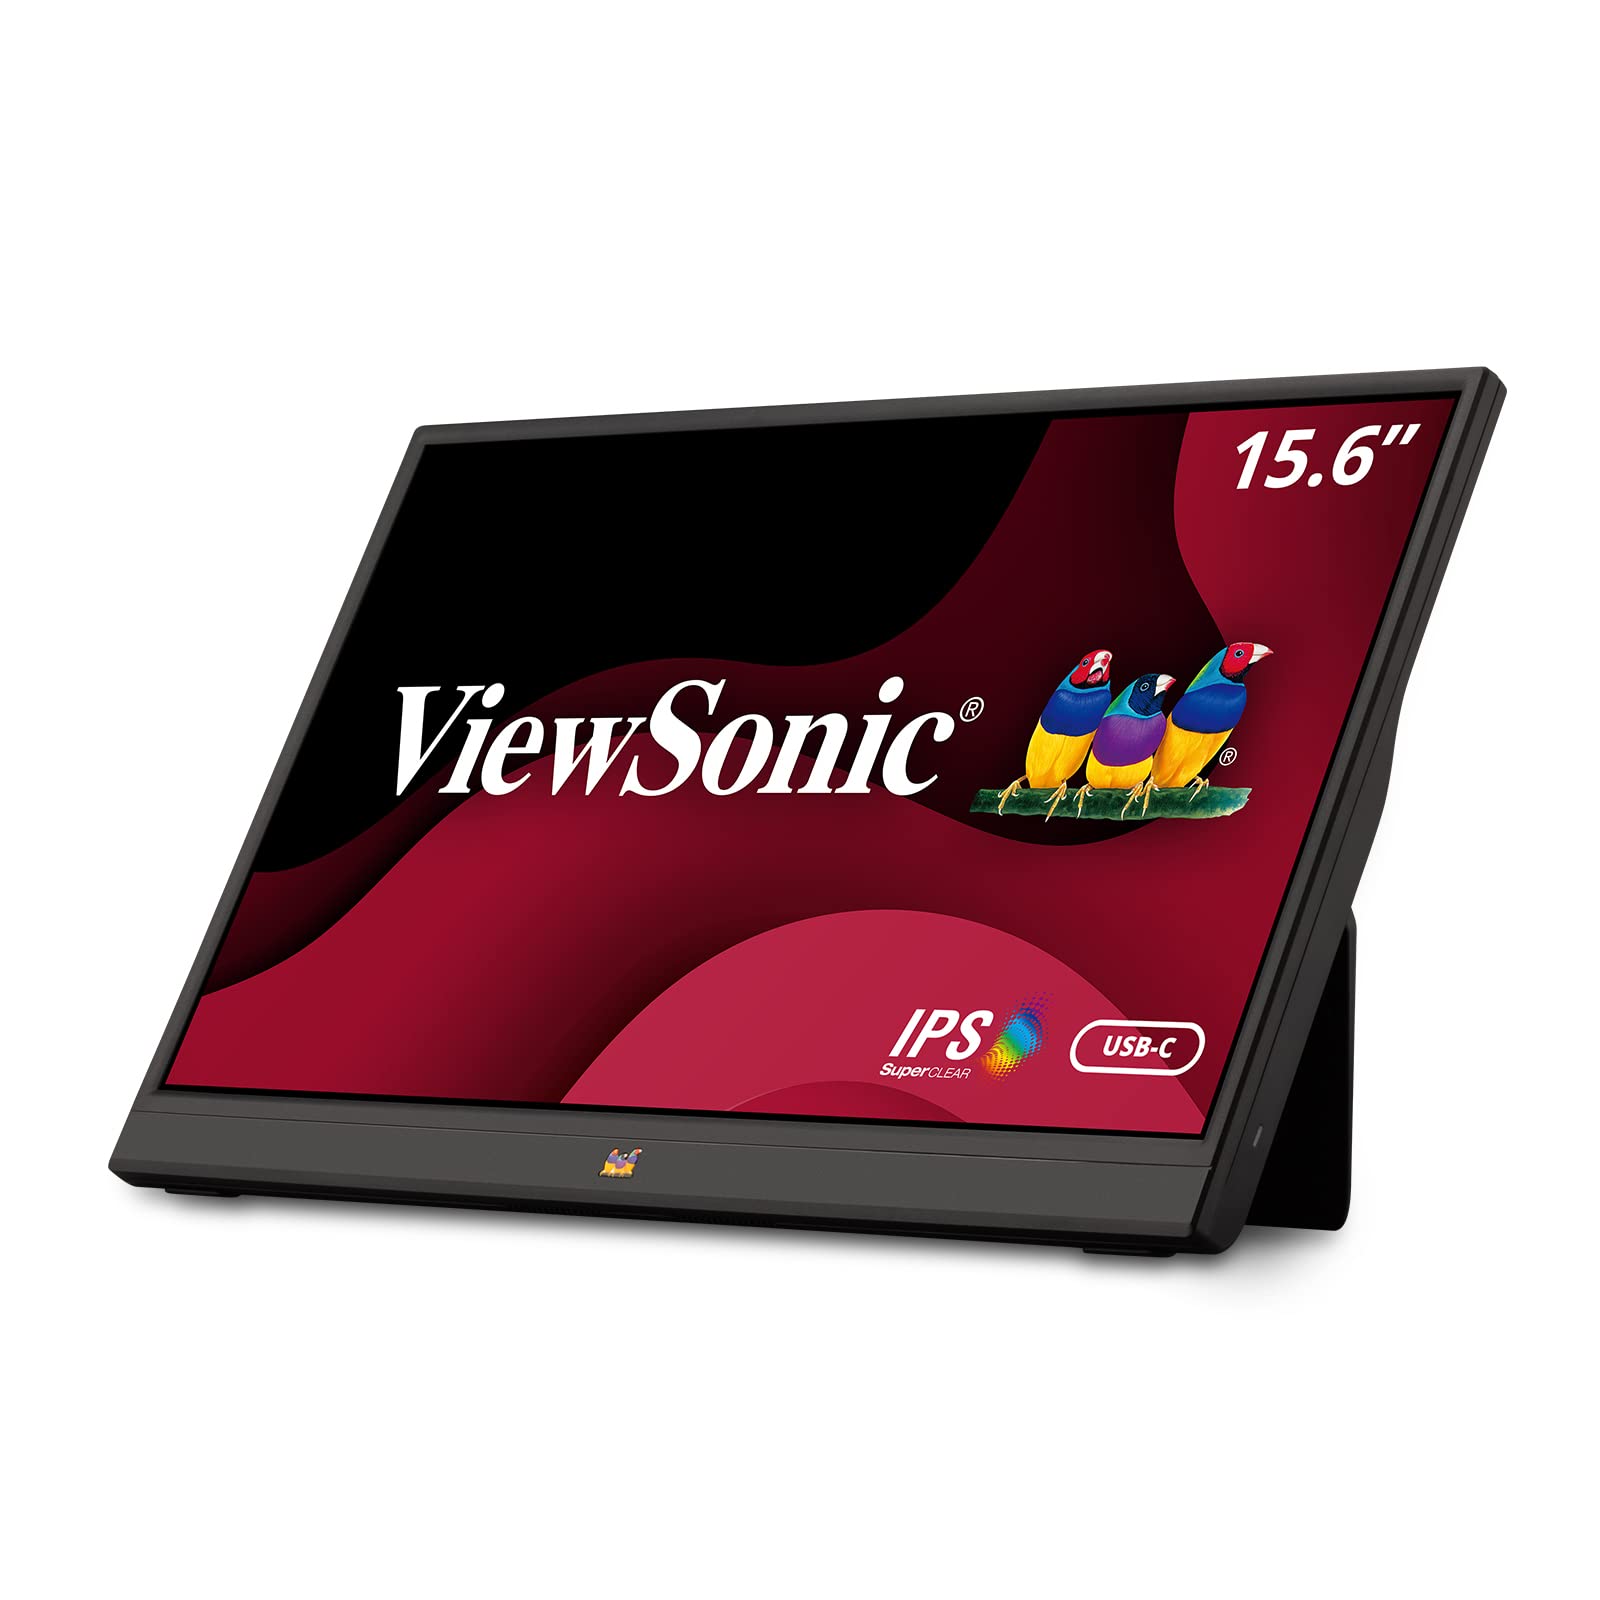  Viewsonic VA1655 15.6 インチ 1080p ポータブル IPS モニター、内蔵スタンド、モバイル人間工学、USB C、ミニ HDMI、家庭およびオフィス用保護ケース付き、...